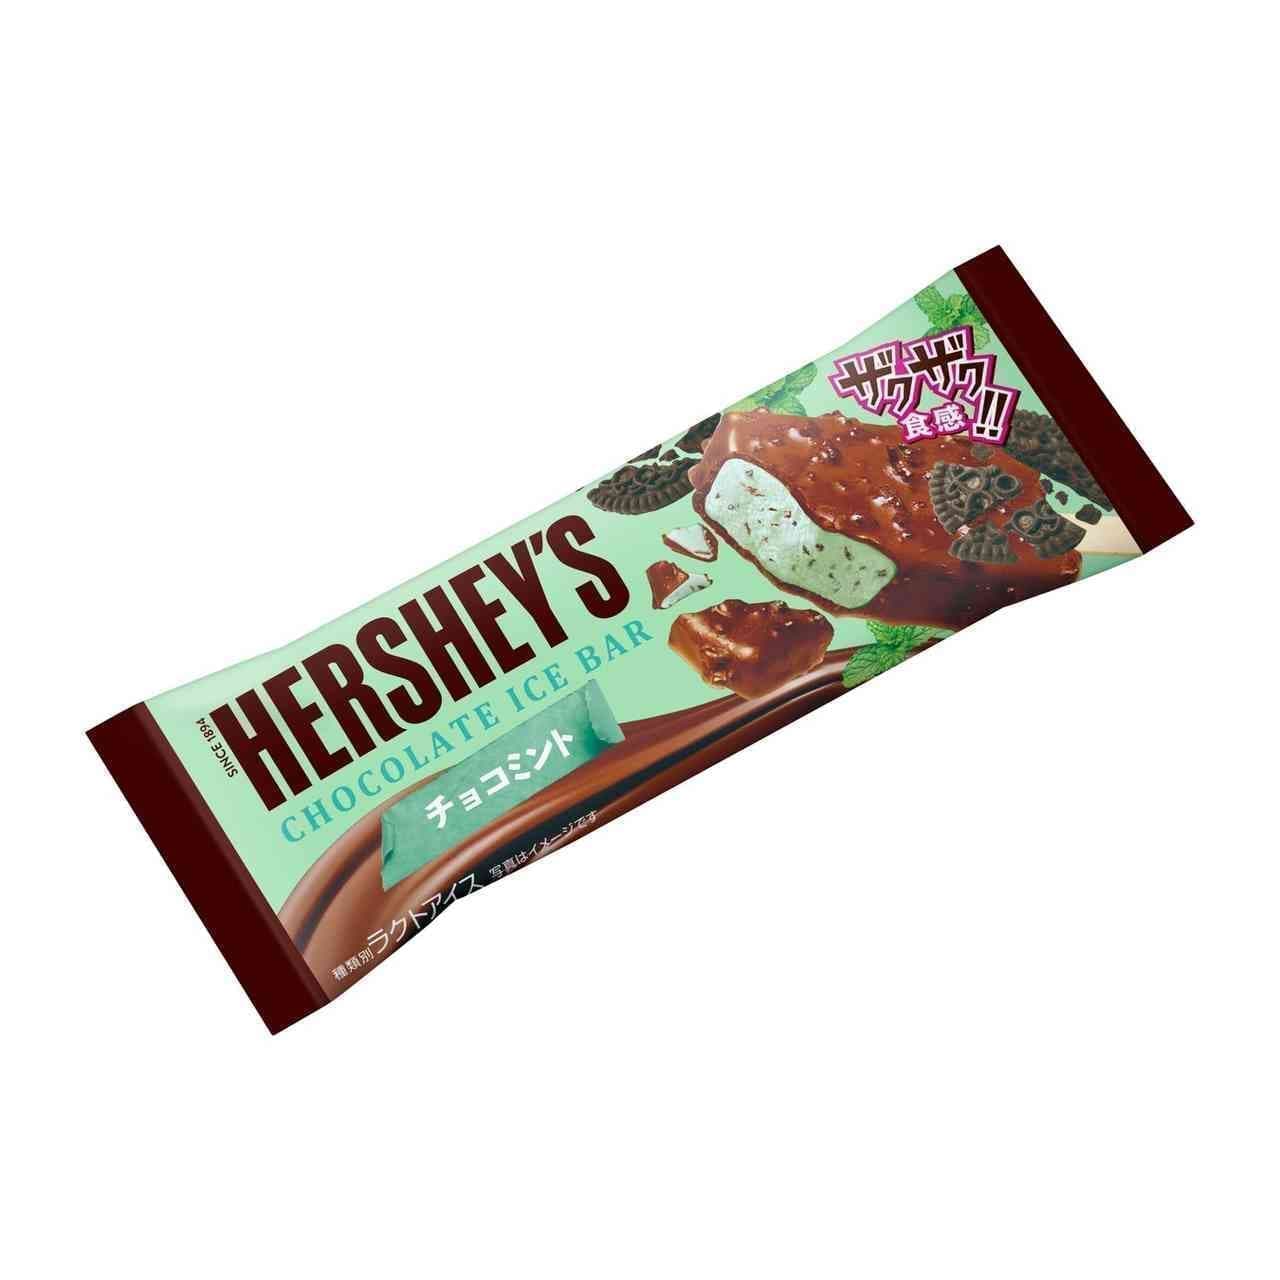 新商品「ハーシーチョコレートアイスバーチョコミント」